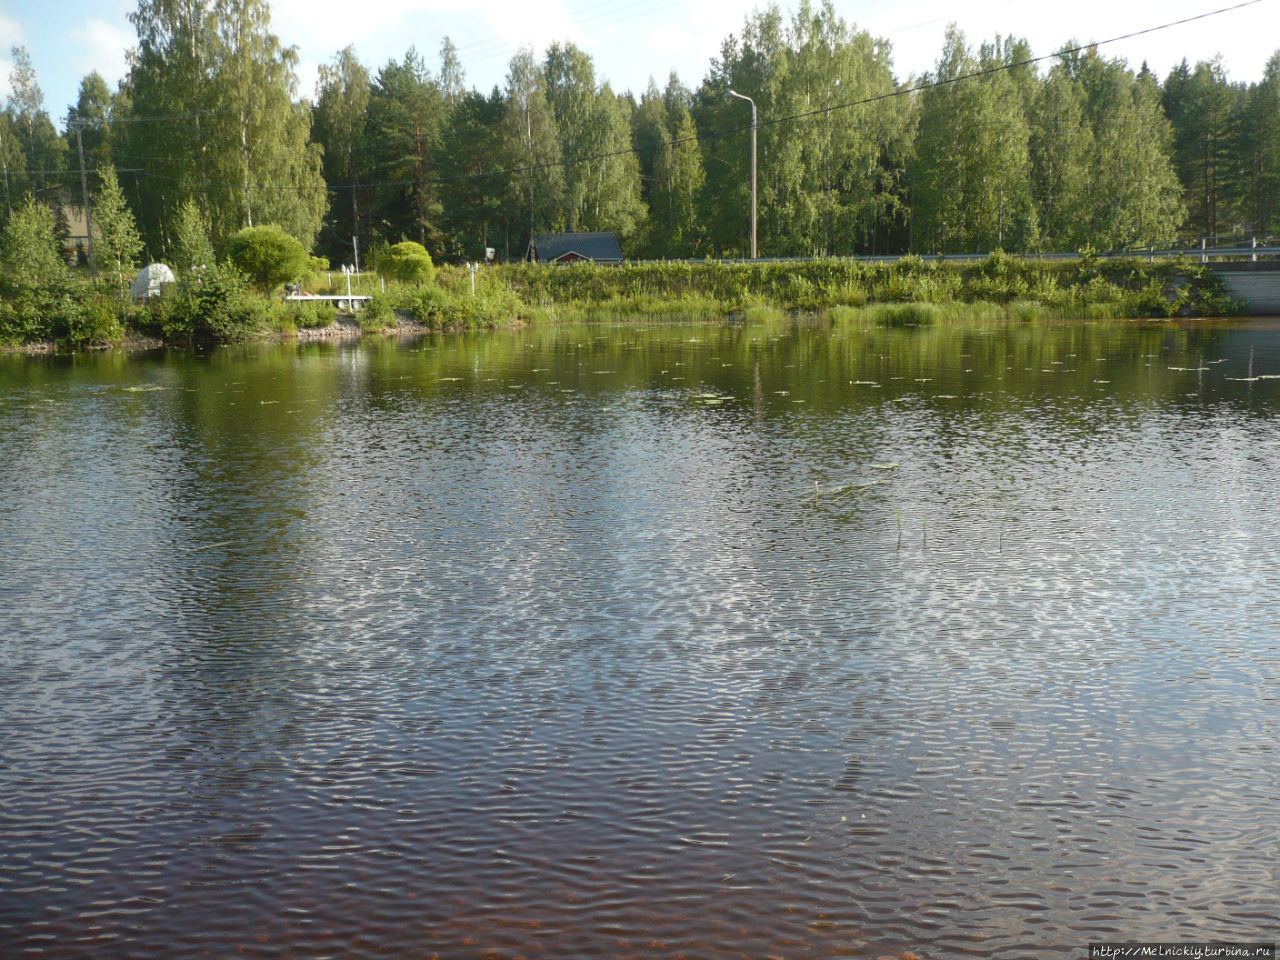 Маленький посёлочек на берегу Саймы Лохилахти, Финляндия